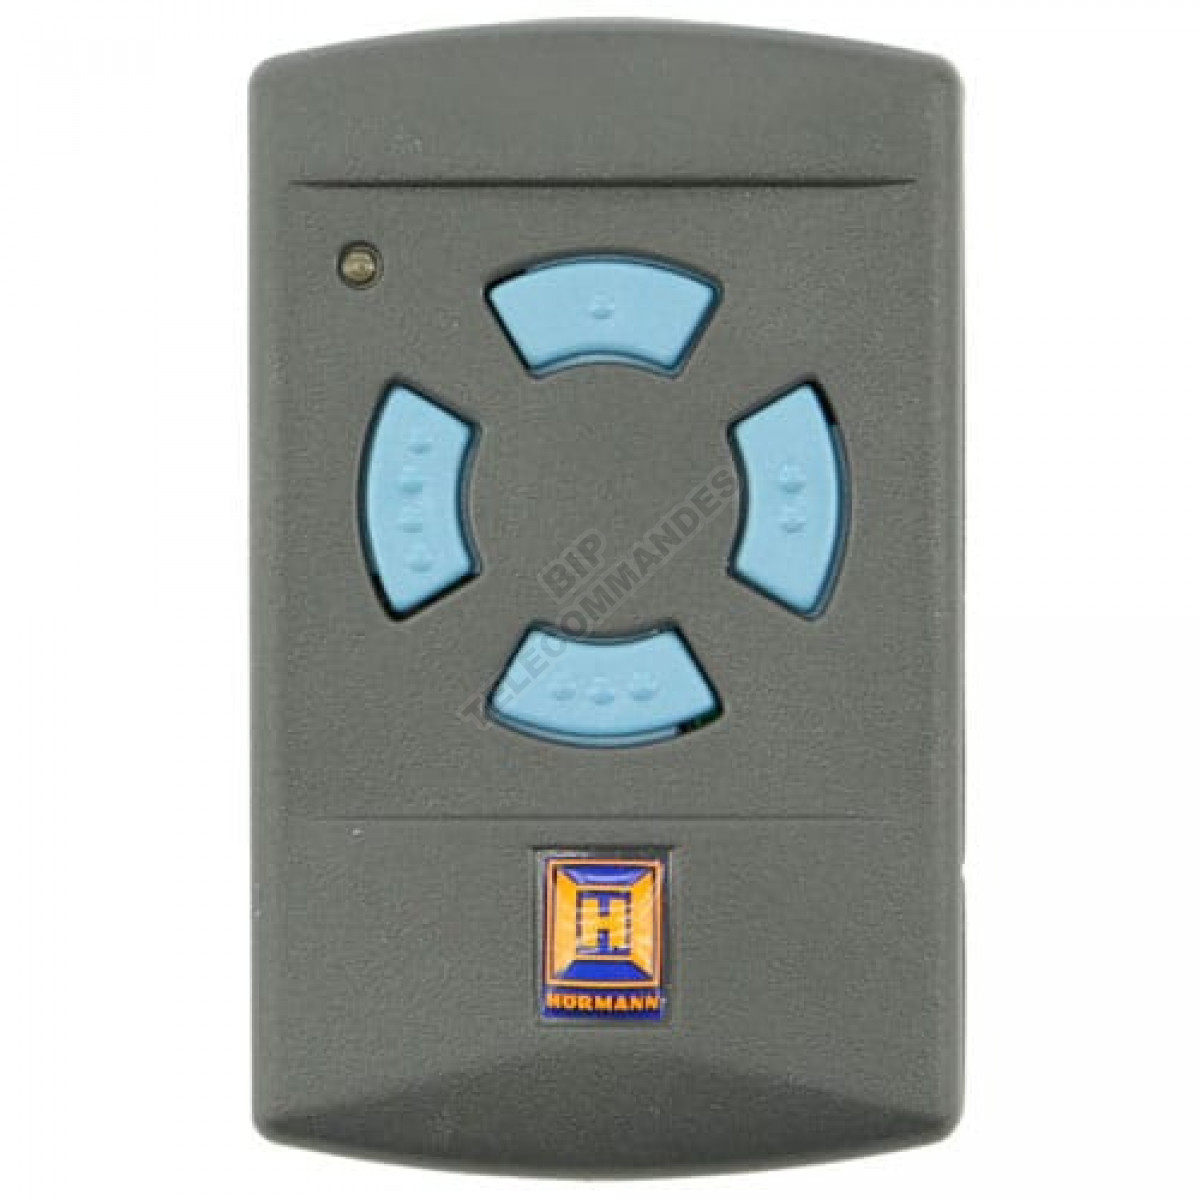 3x Hormann hsm4 868 MHz émetteur manuel bleu touches 